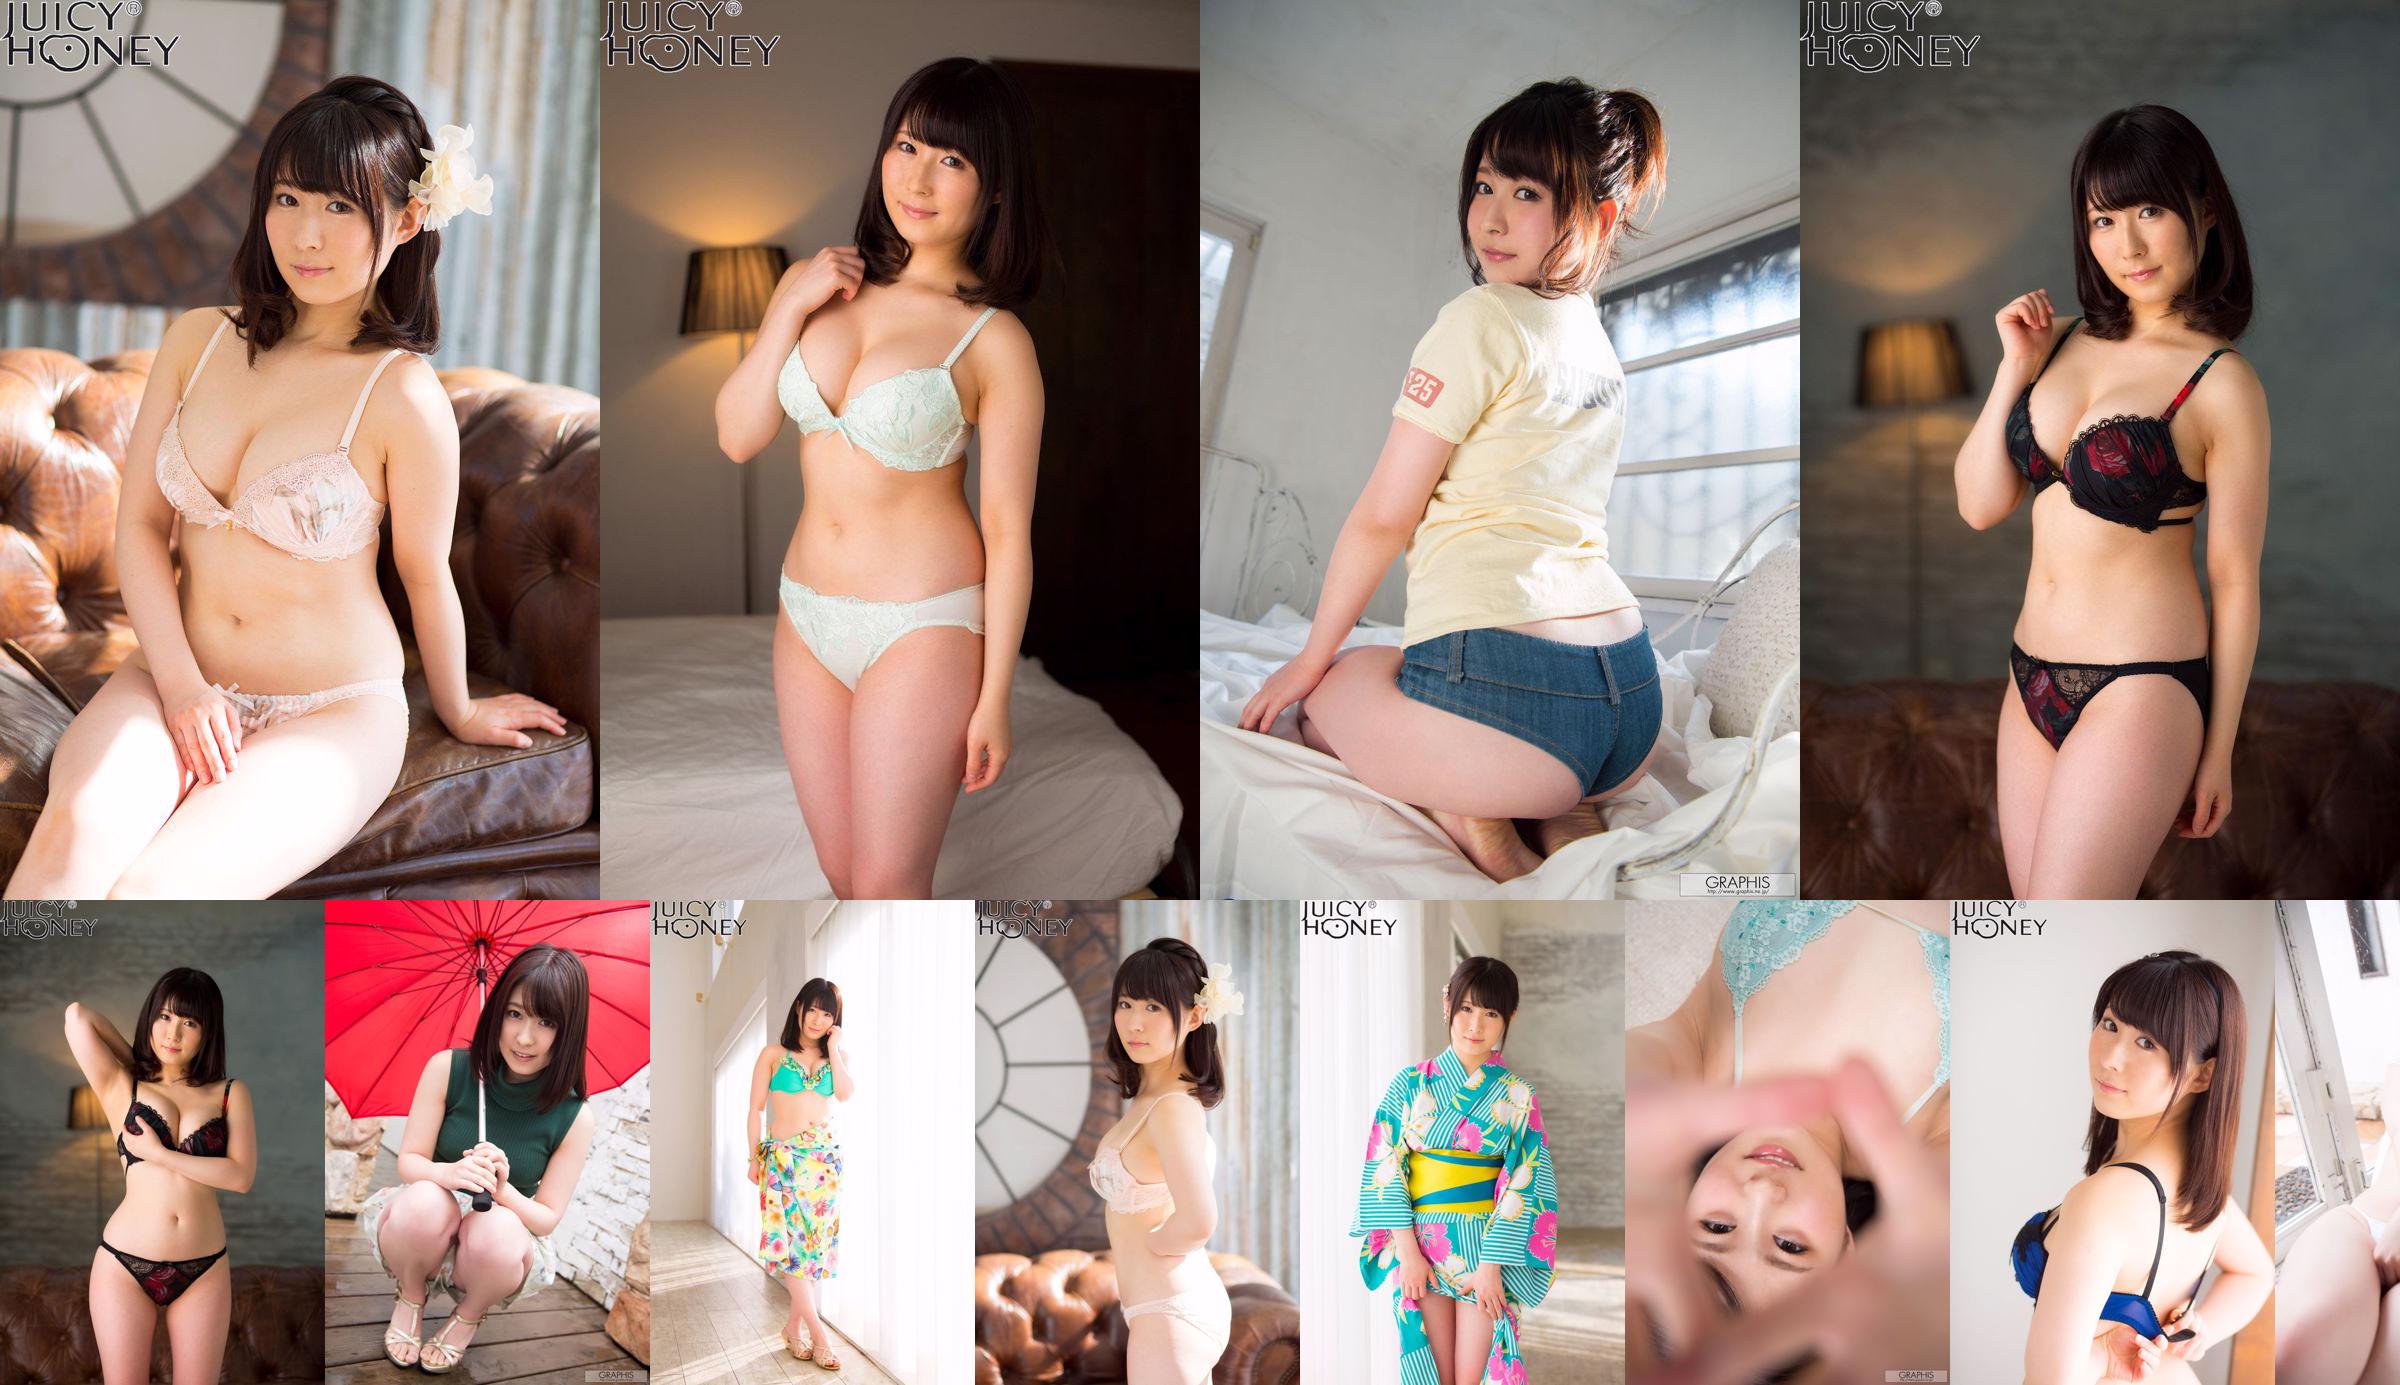 [X-City] Juicy Honey jh216 Asuka Rin Asuka No.2a50b1 Halaman 1